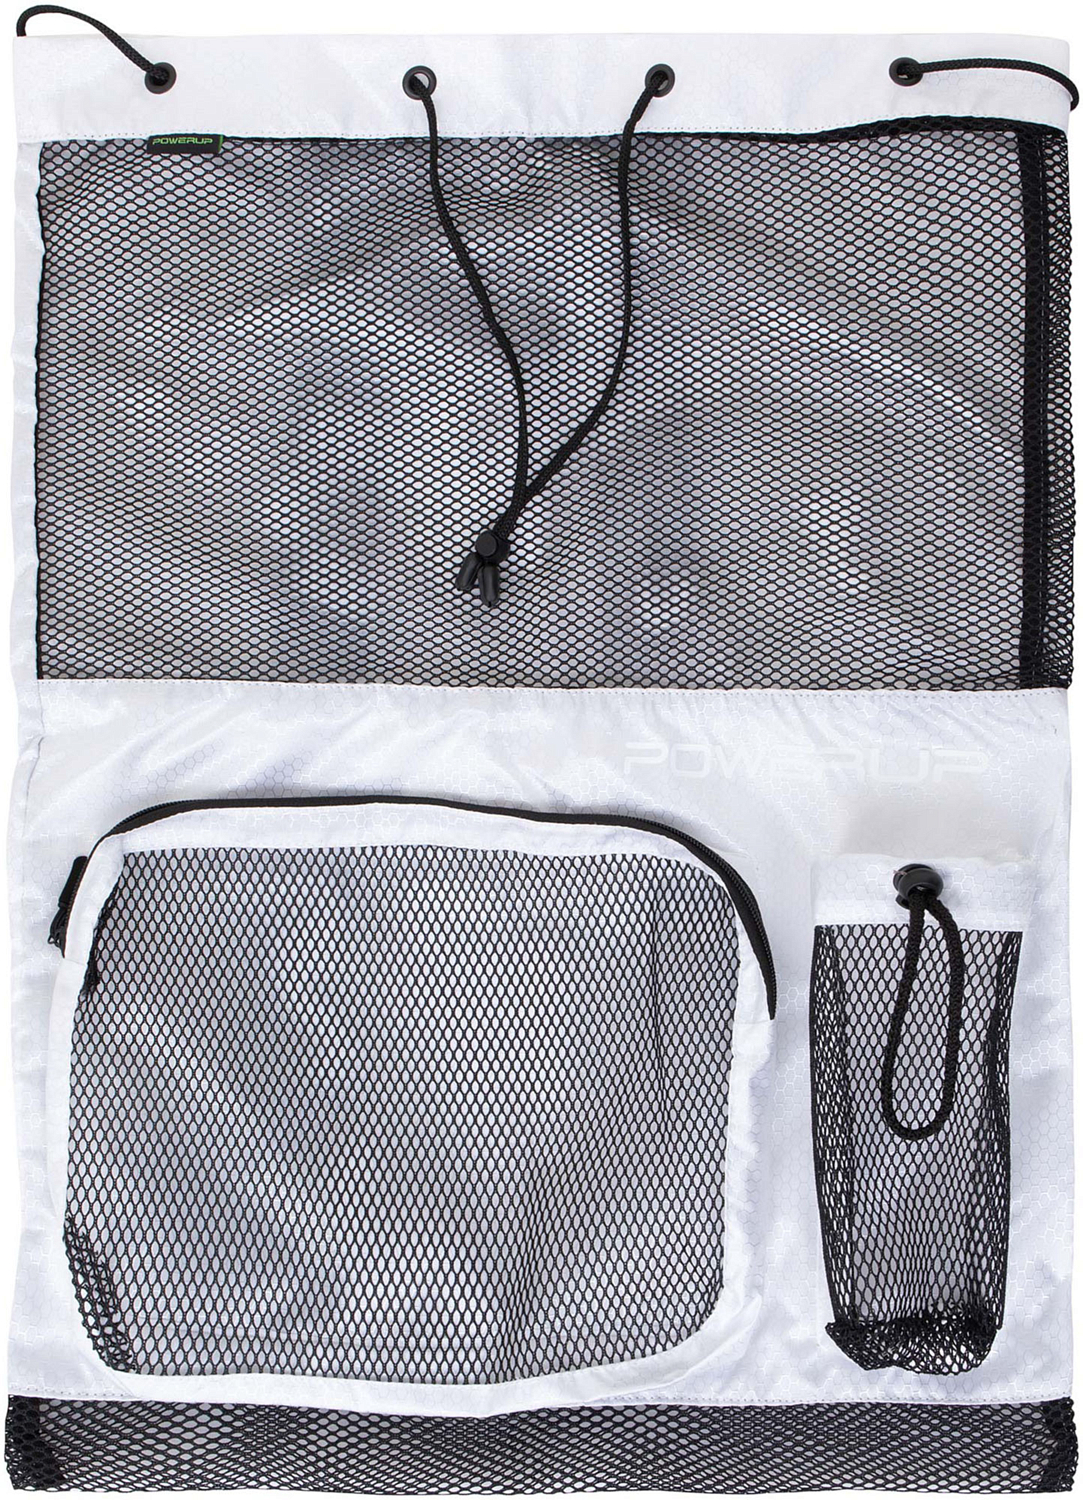 Рюкзак для плавательных аксессуаров POWERUP Swim White